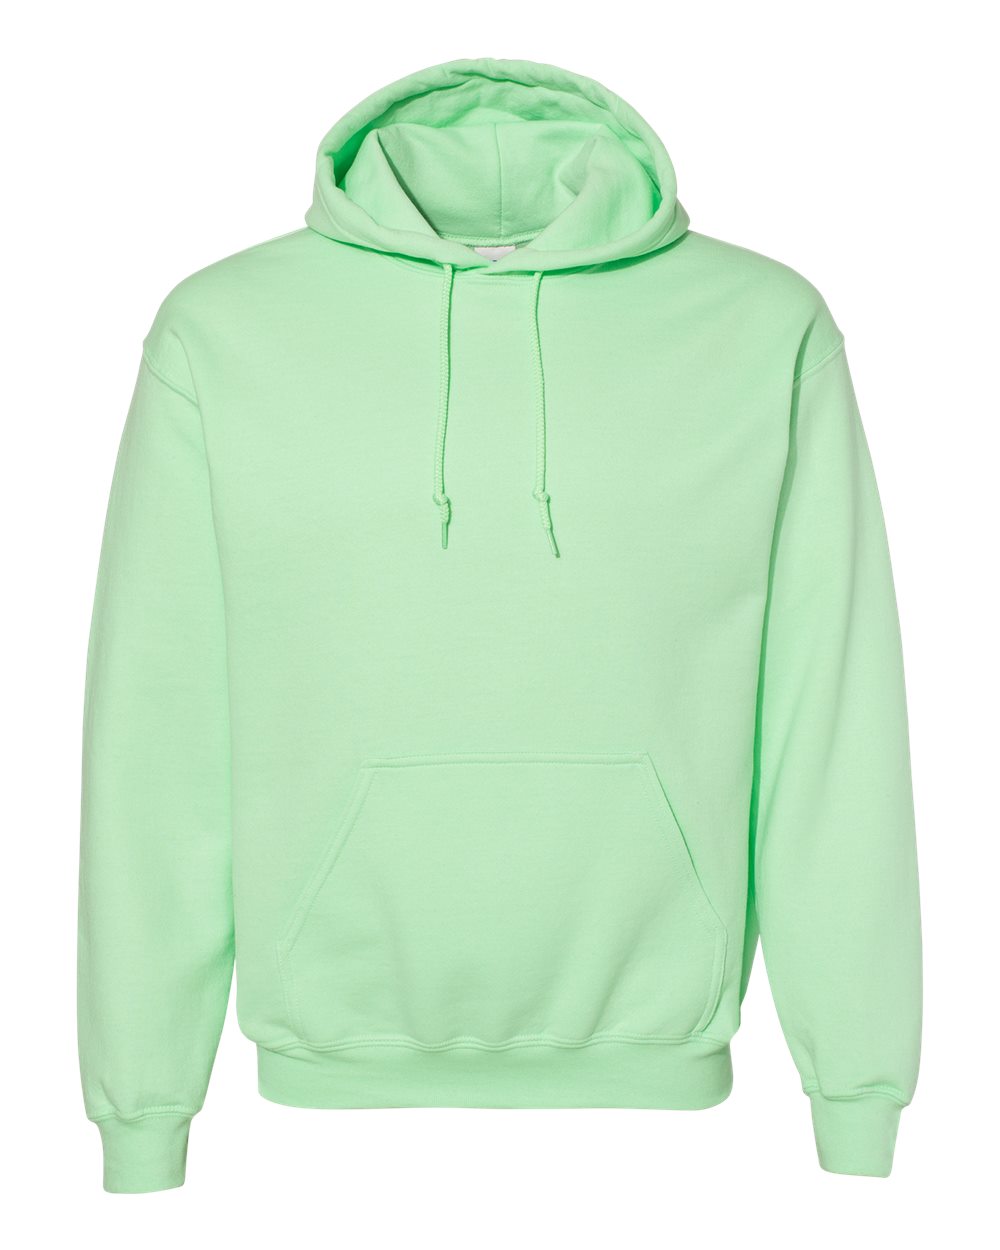 Custom solid hoodie